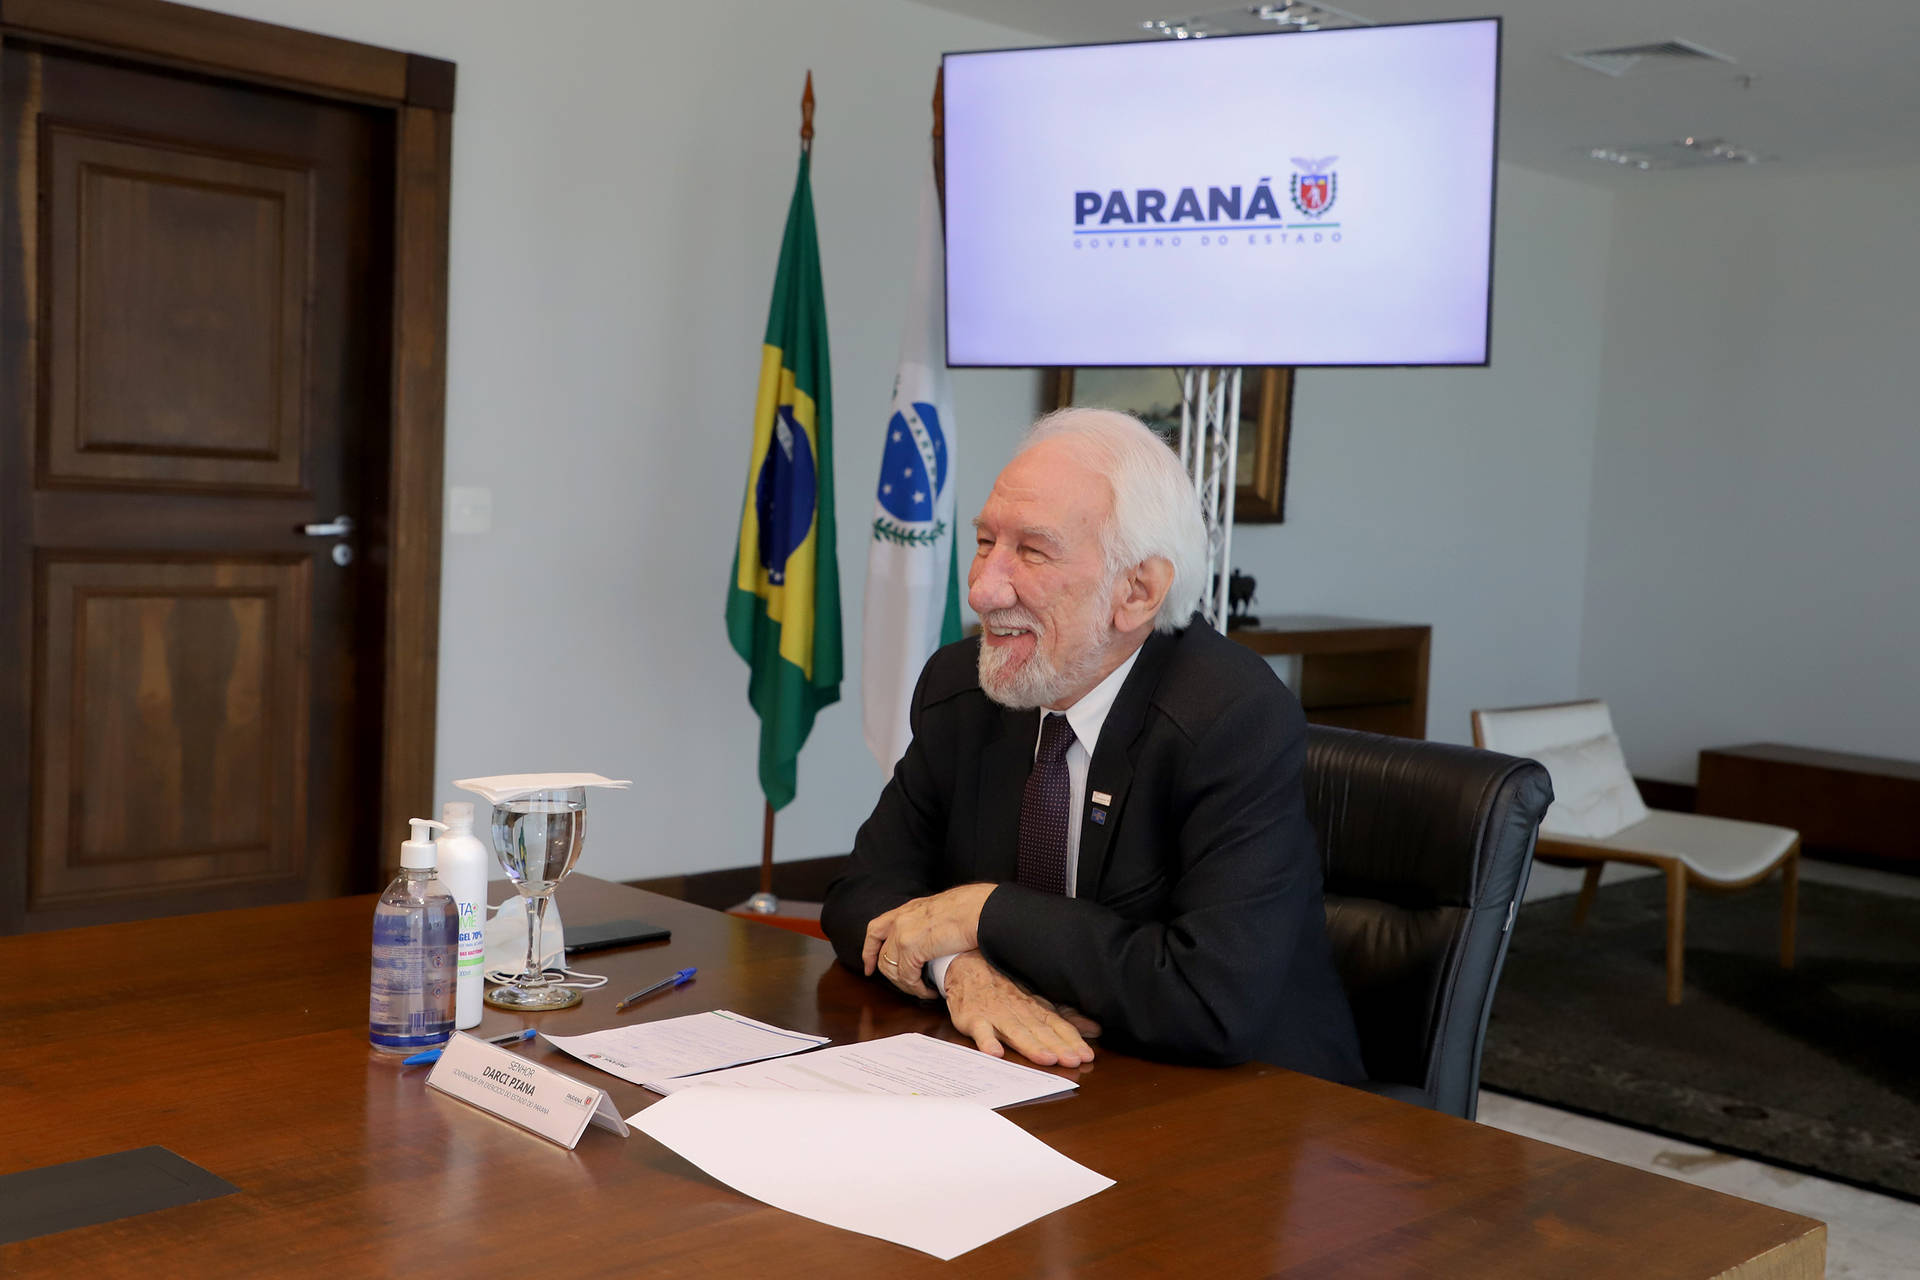 Estado reforça compromisso com as cooperativas, que investirão R$ 30,3 bilhões no Paraná até 2026